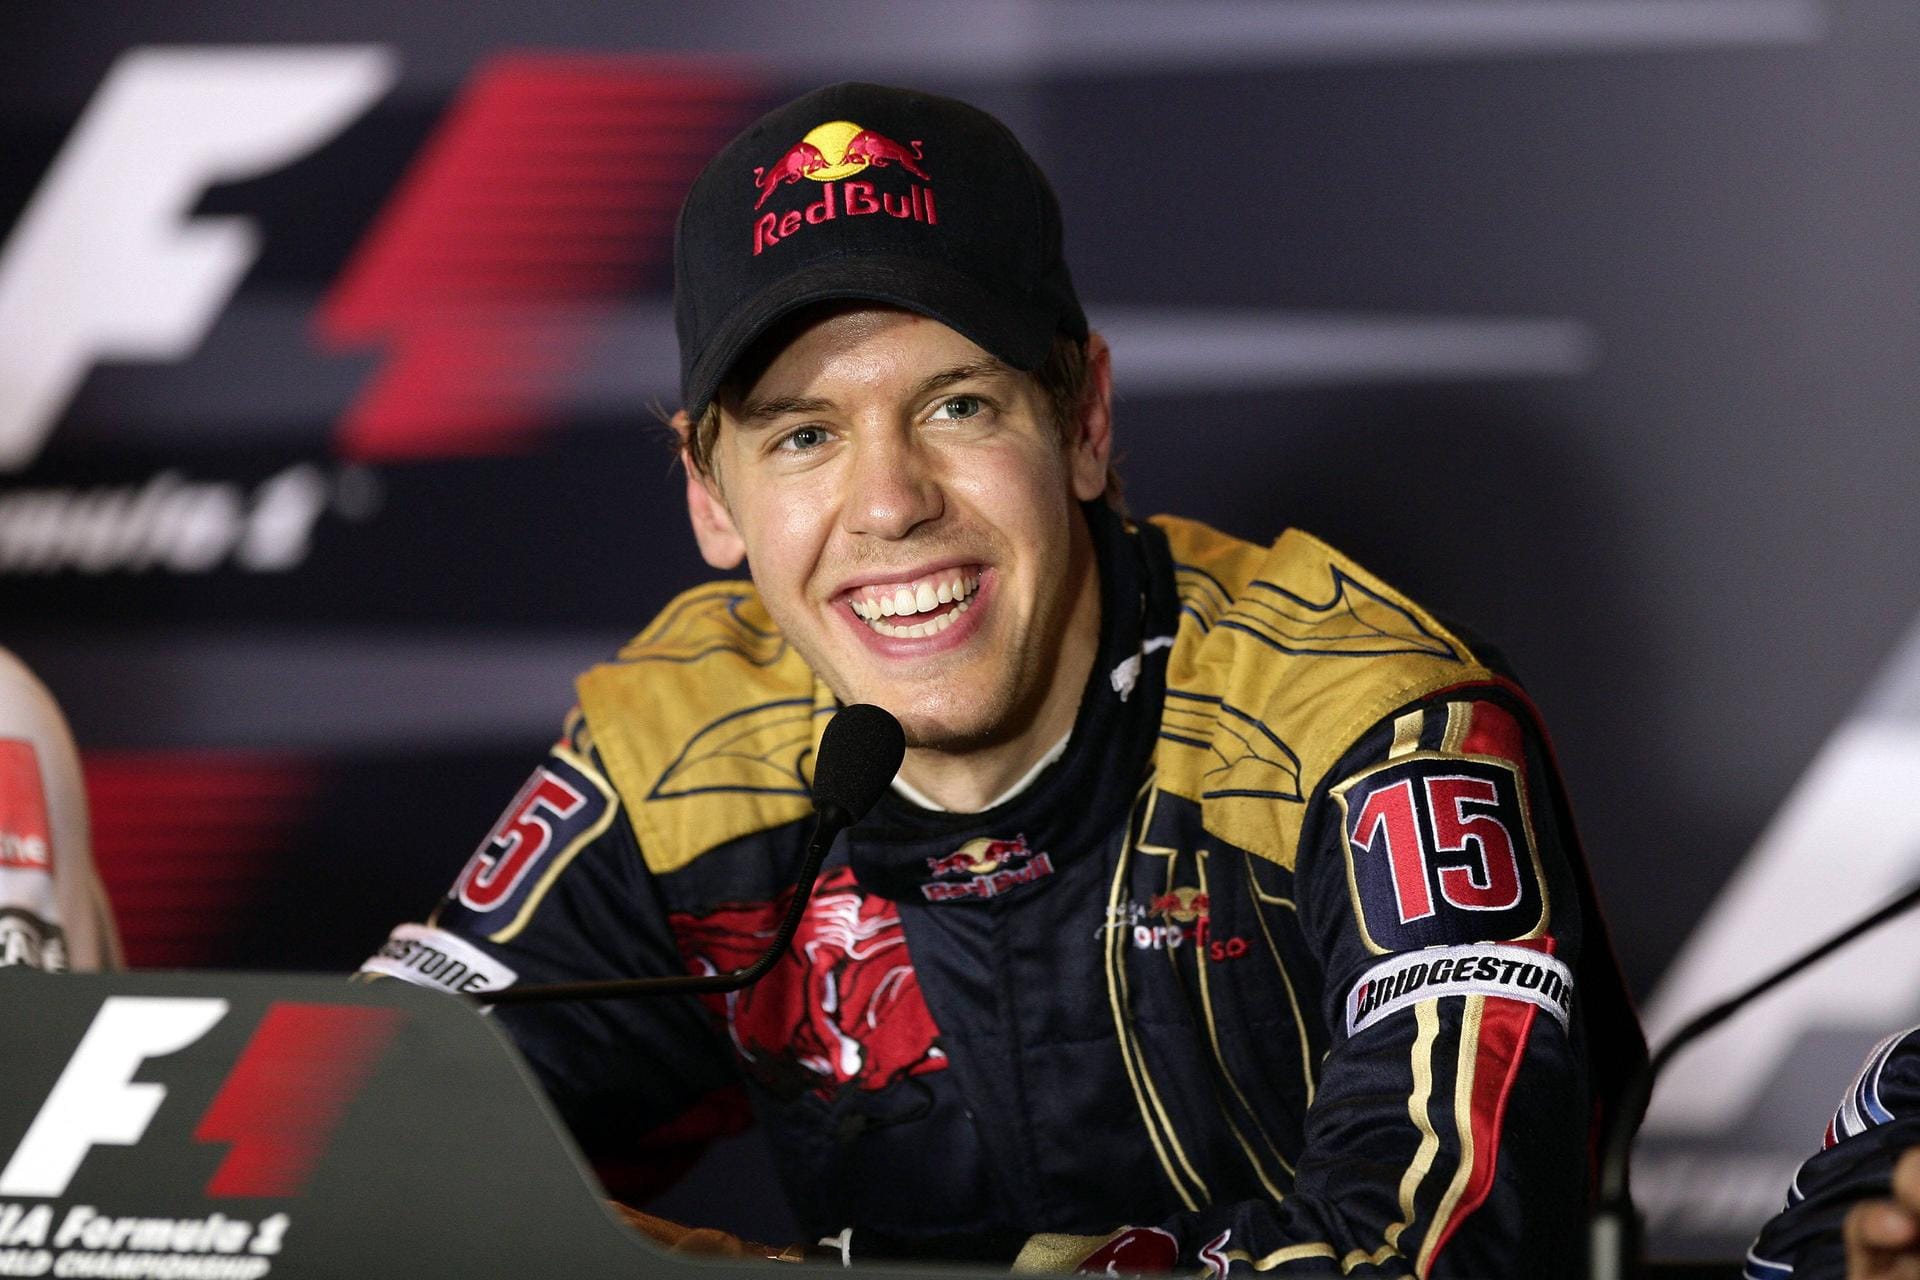 Sebastian Vettel bei seinem ersten Sieg